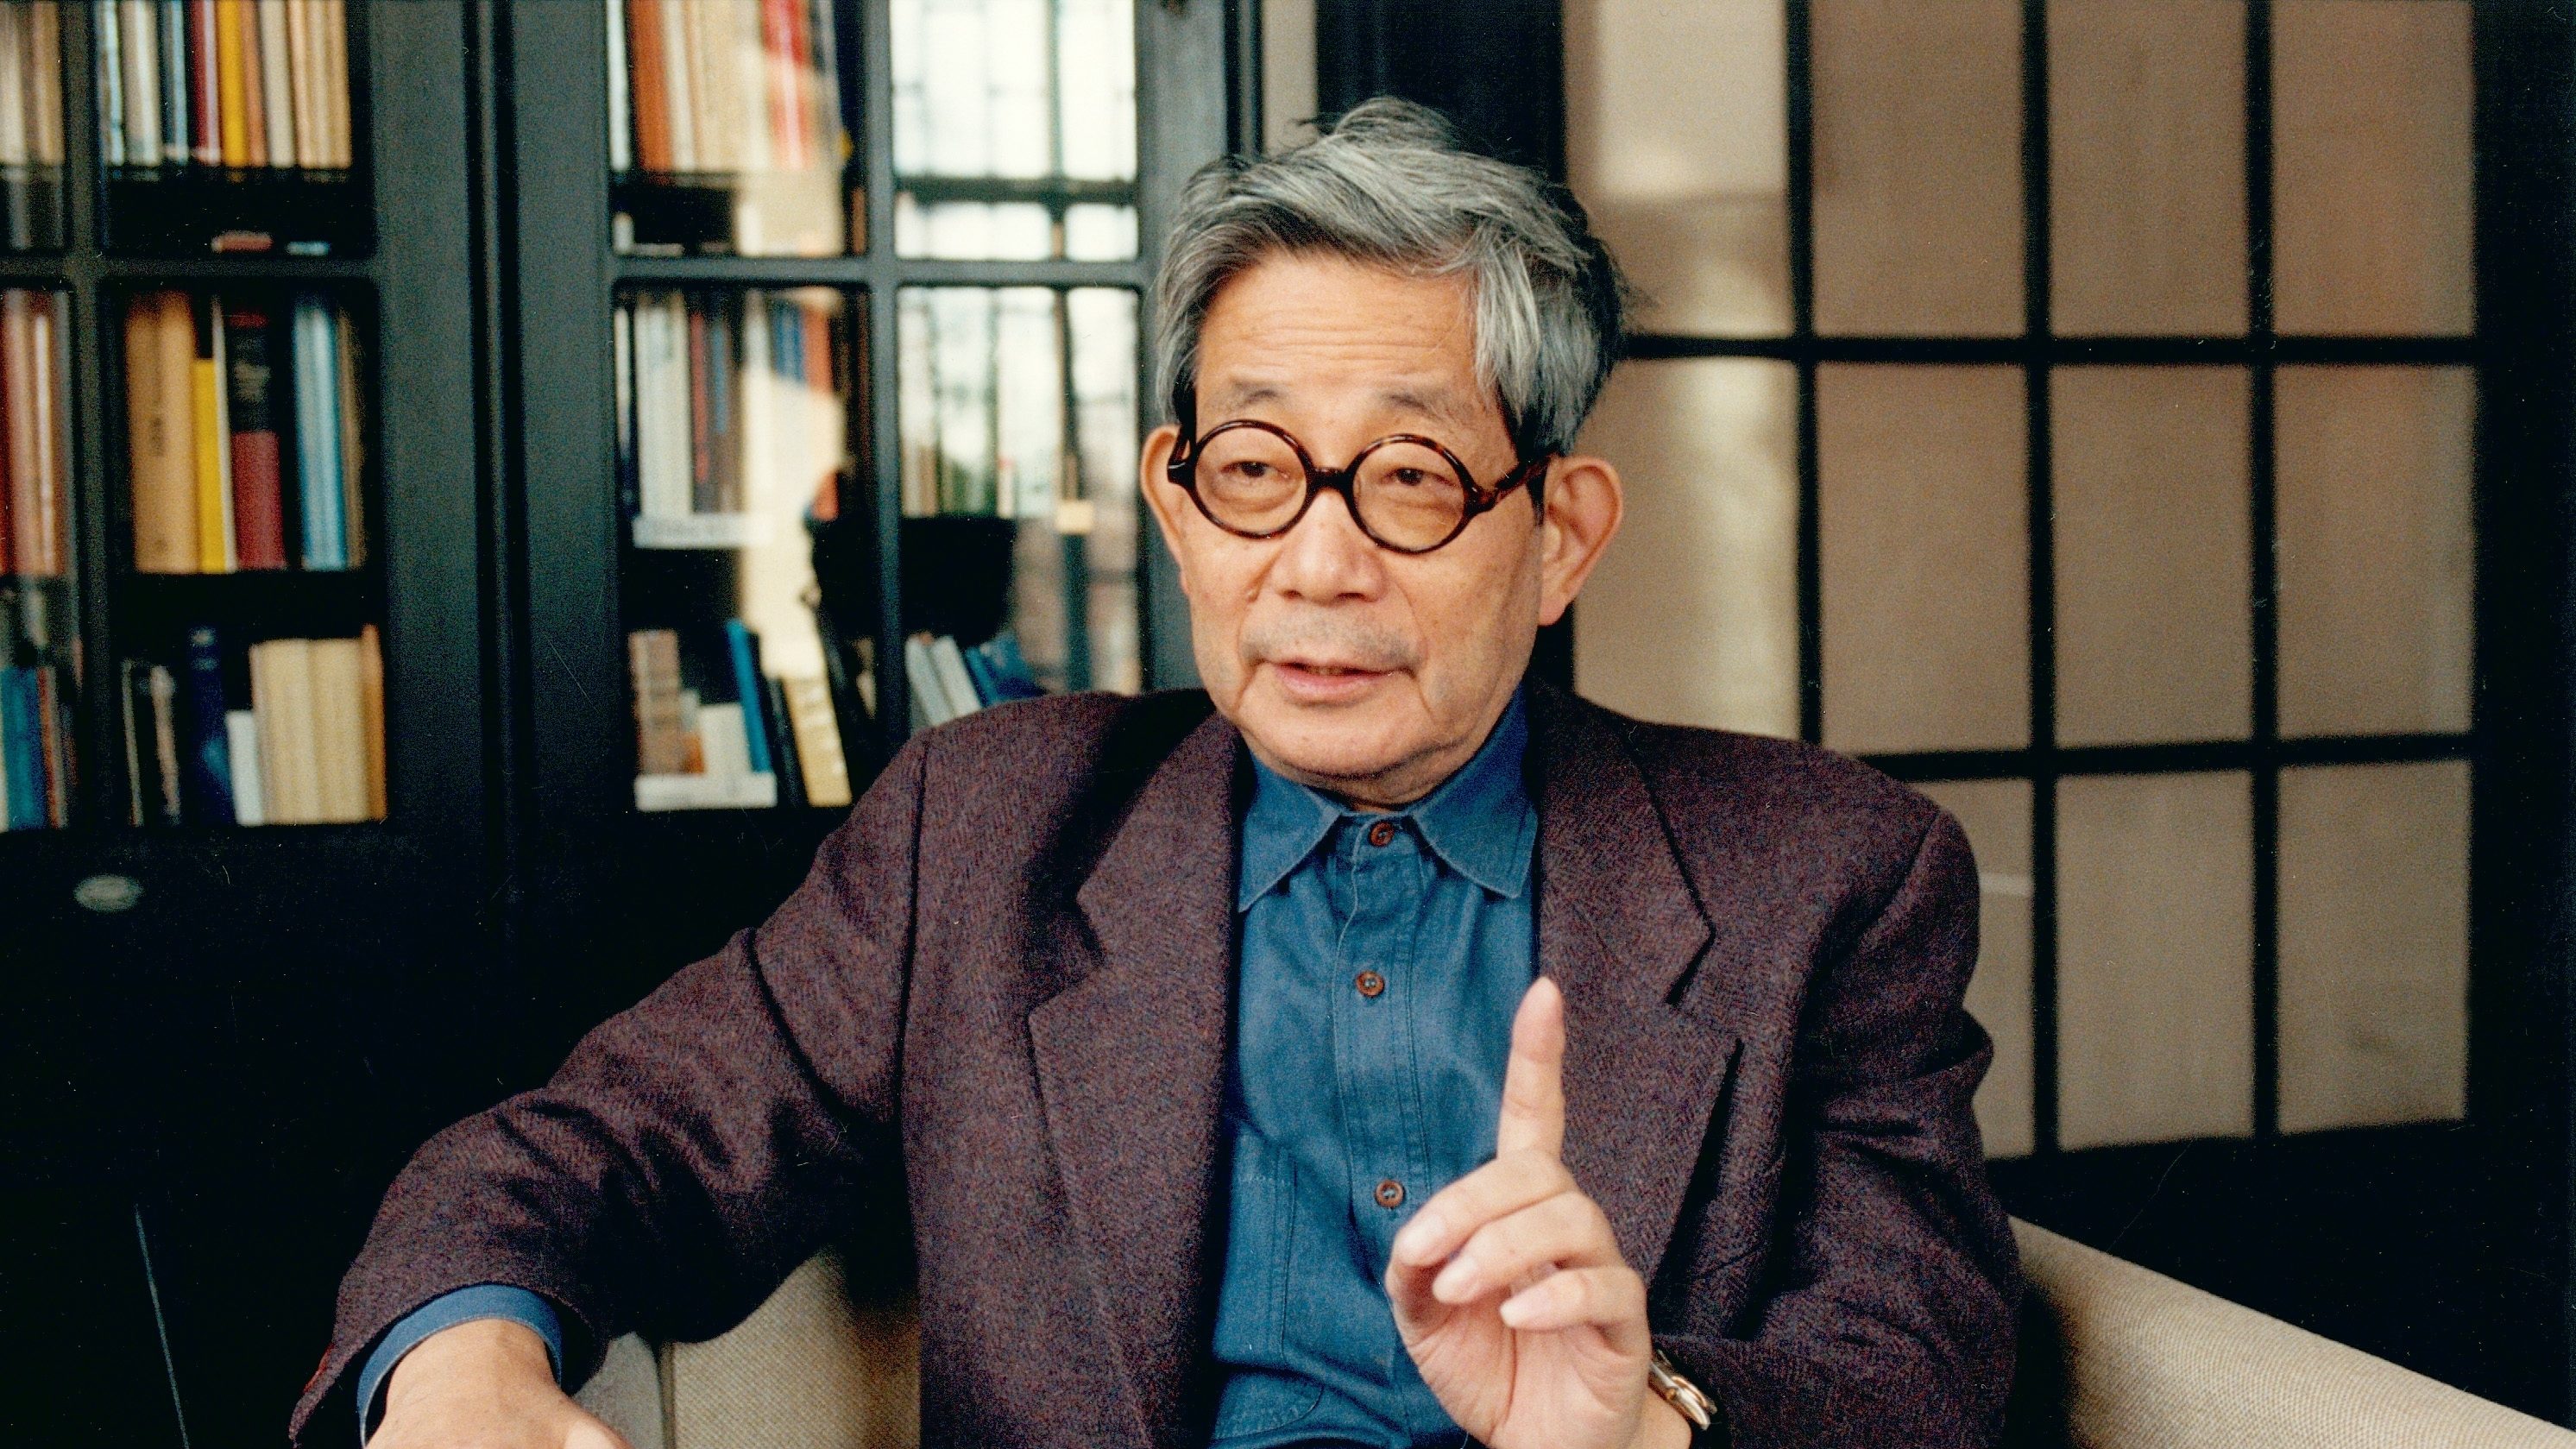 「戦後日本の倦怠感と幻滅を表現した」世界的小説家、大江健三郎を米紙が追悼 | 個人と政治の橋渡しをした作品群